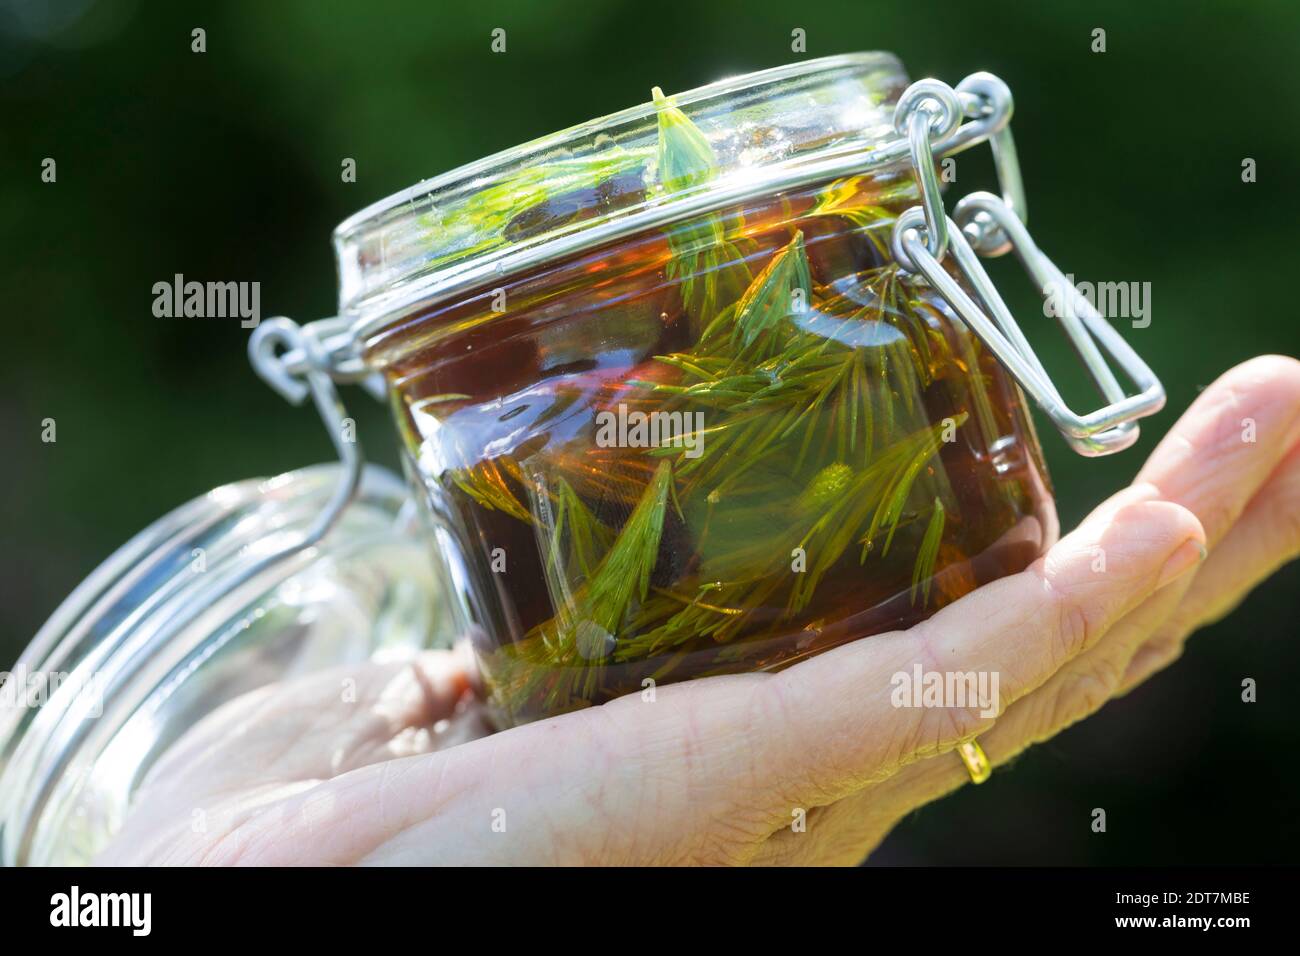 Norwegenfichte (Picea abies), Herstellung von Hustenlinctus, frisch gekeimt Fichtensprossen werden in Honig eingelegtDeutschland Stockfoto